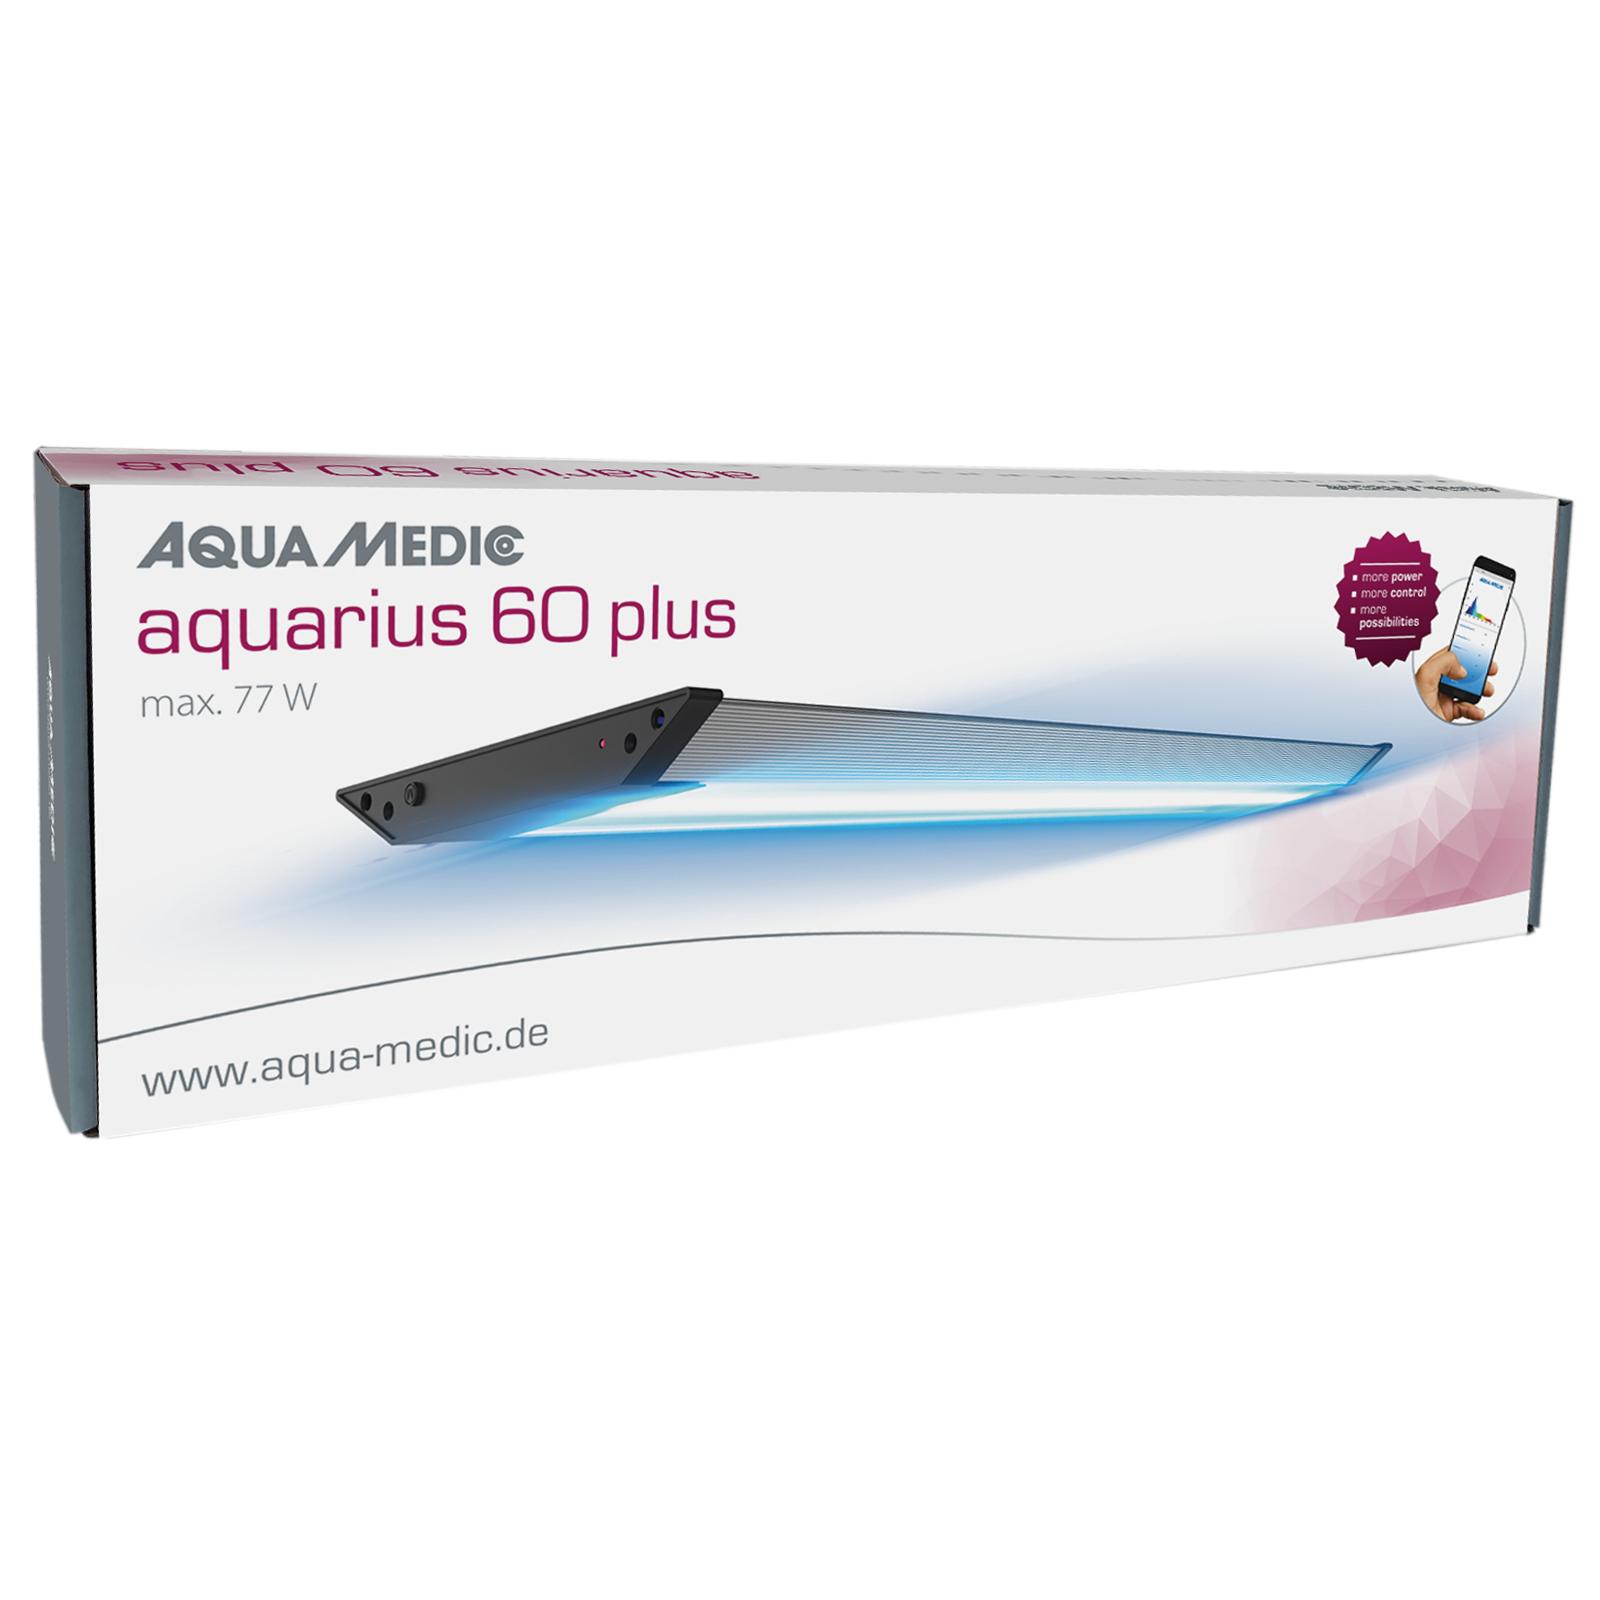 Aqua Medic aquarius PLUS 60